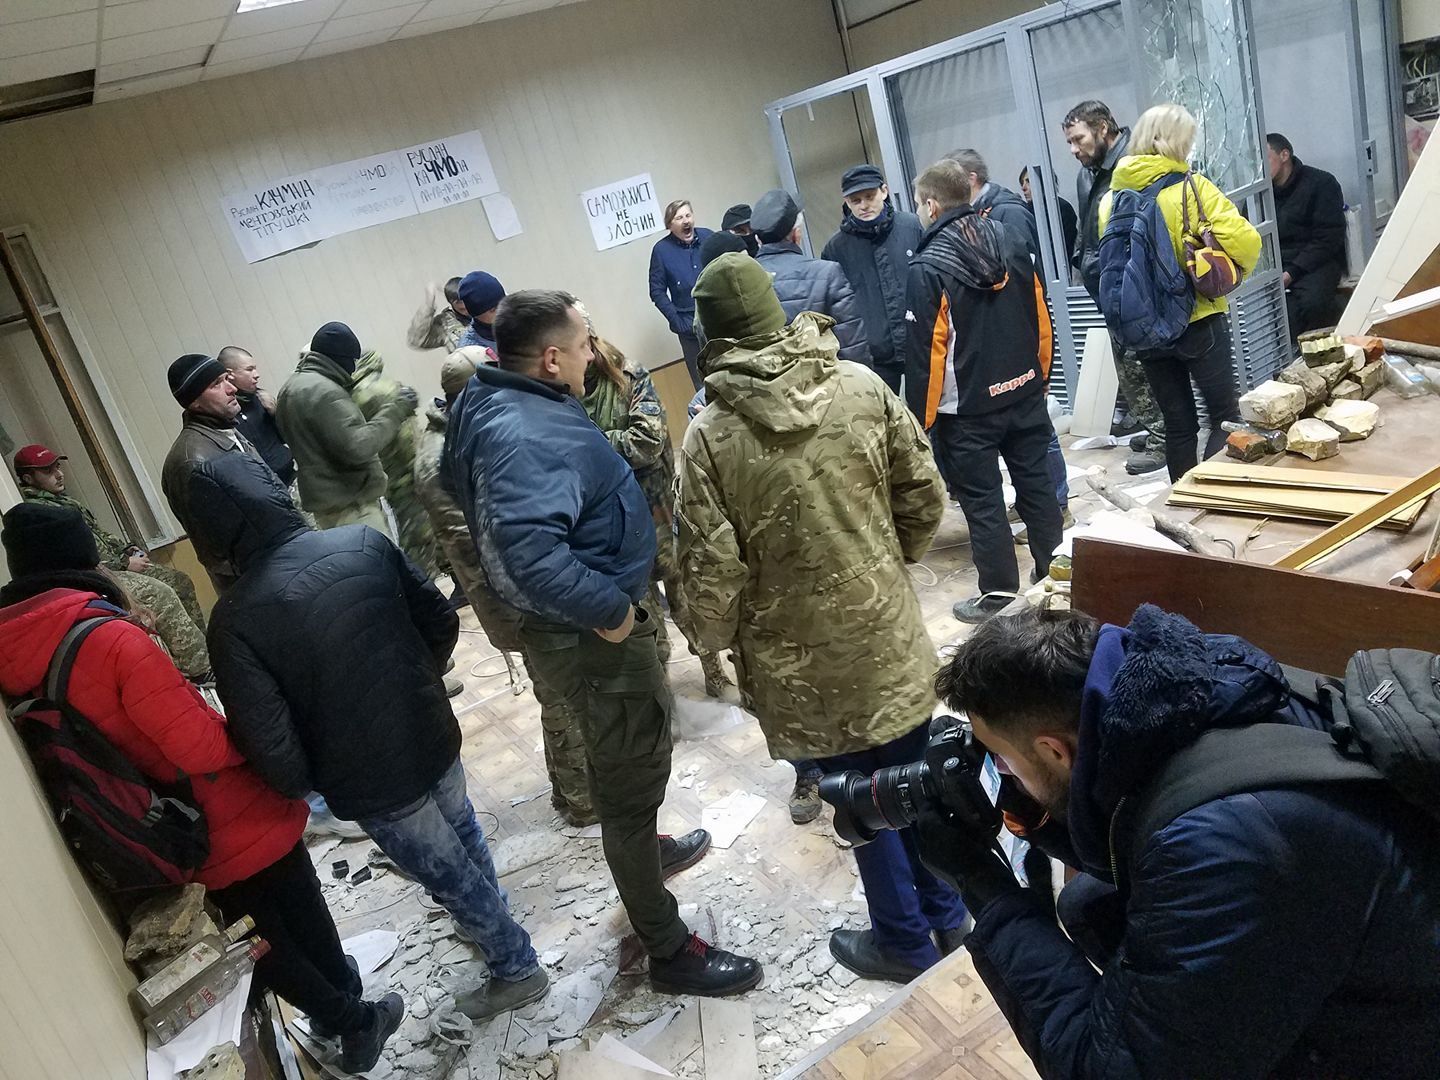 Як пройшла ніч в залі суду над Коханівським, де забарикадувалися активісти: фото та відео